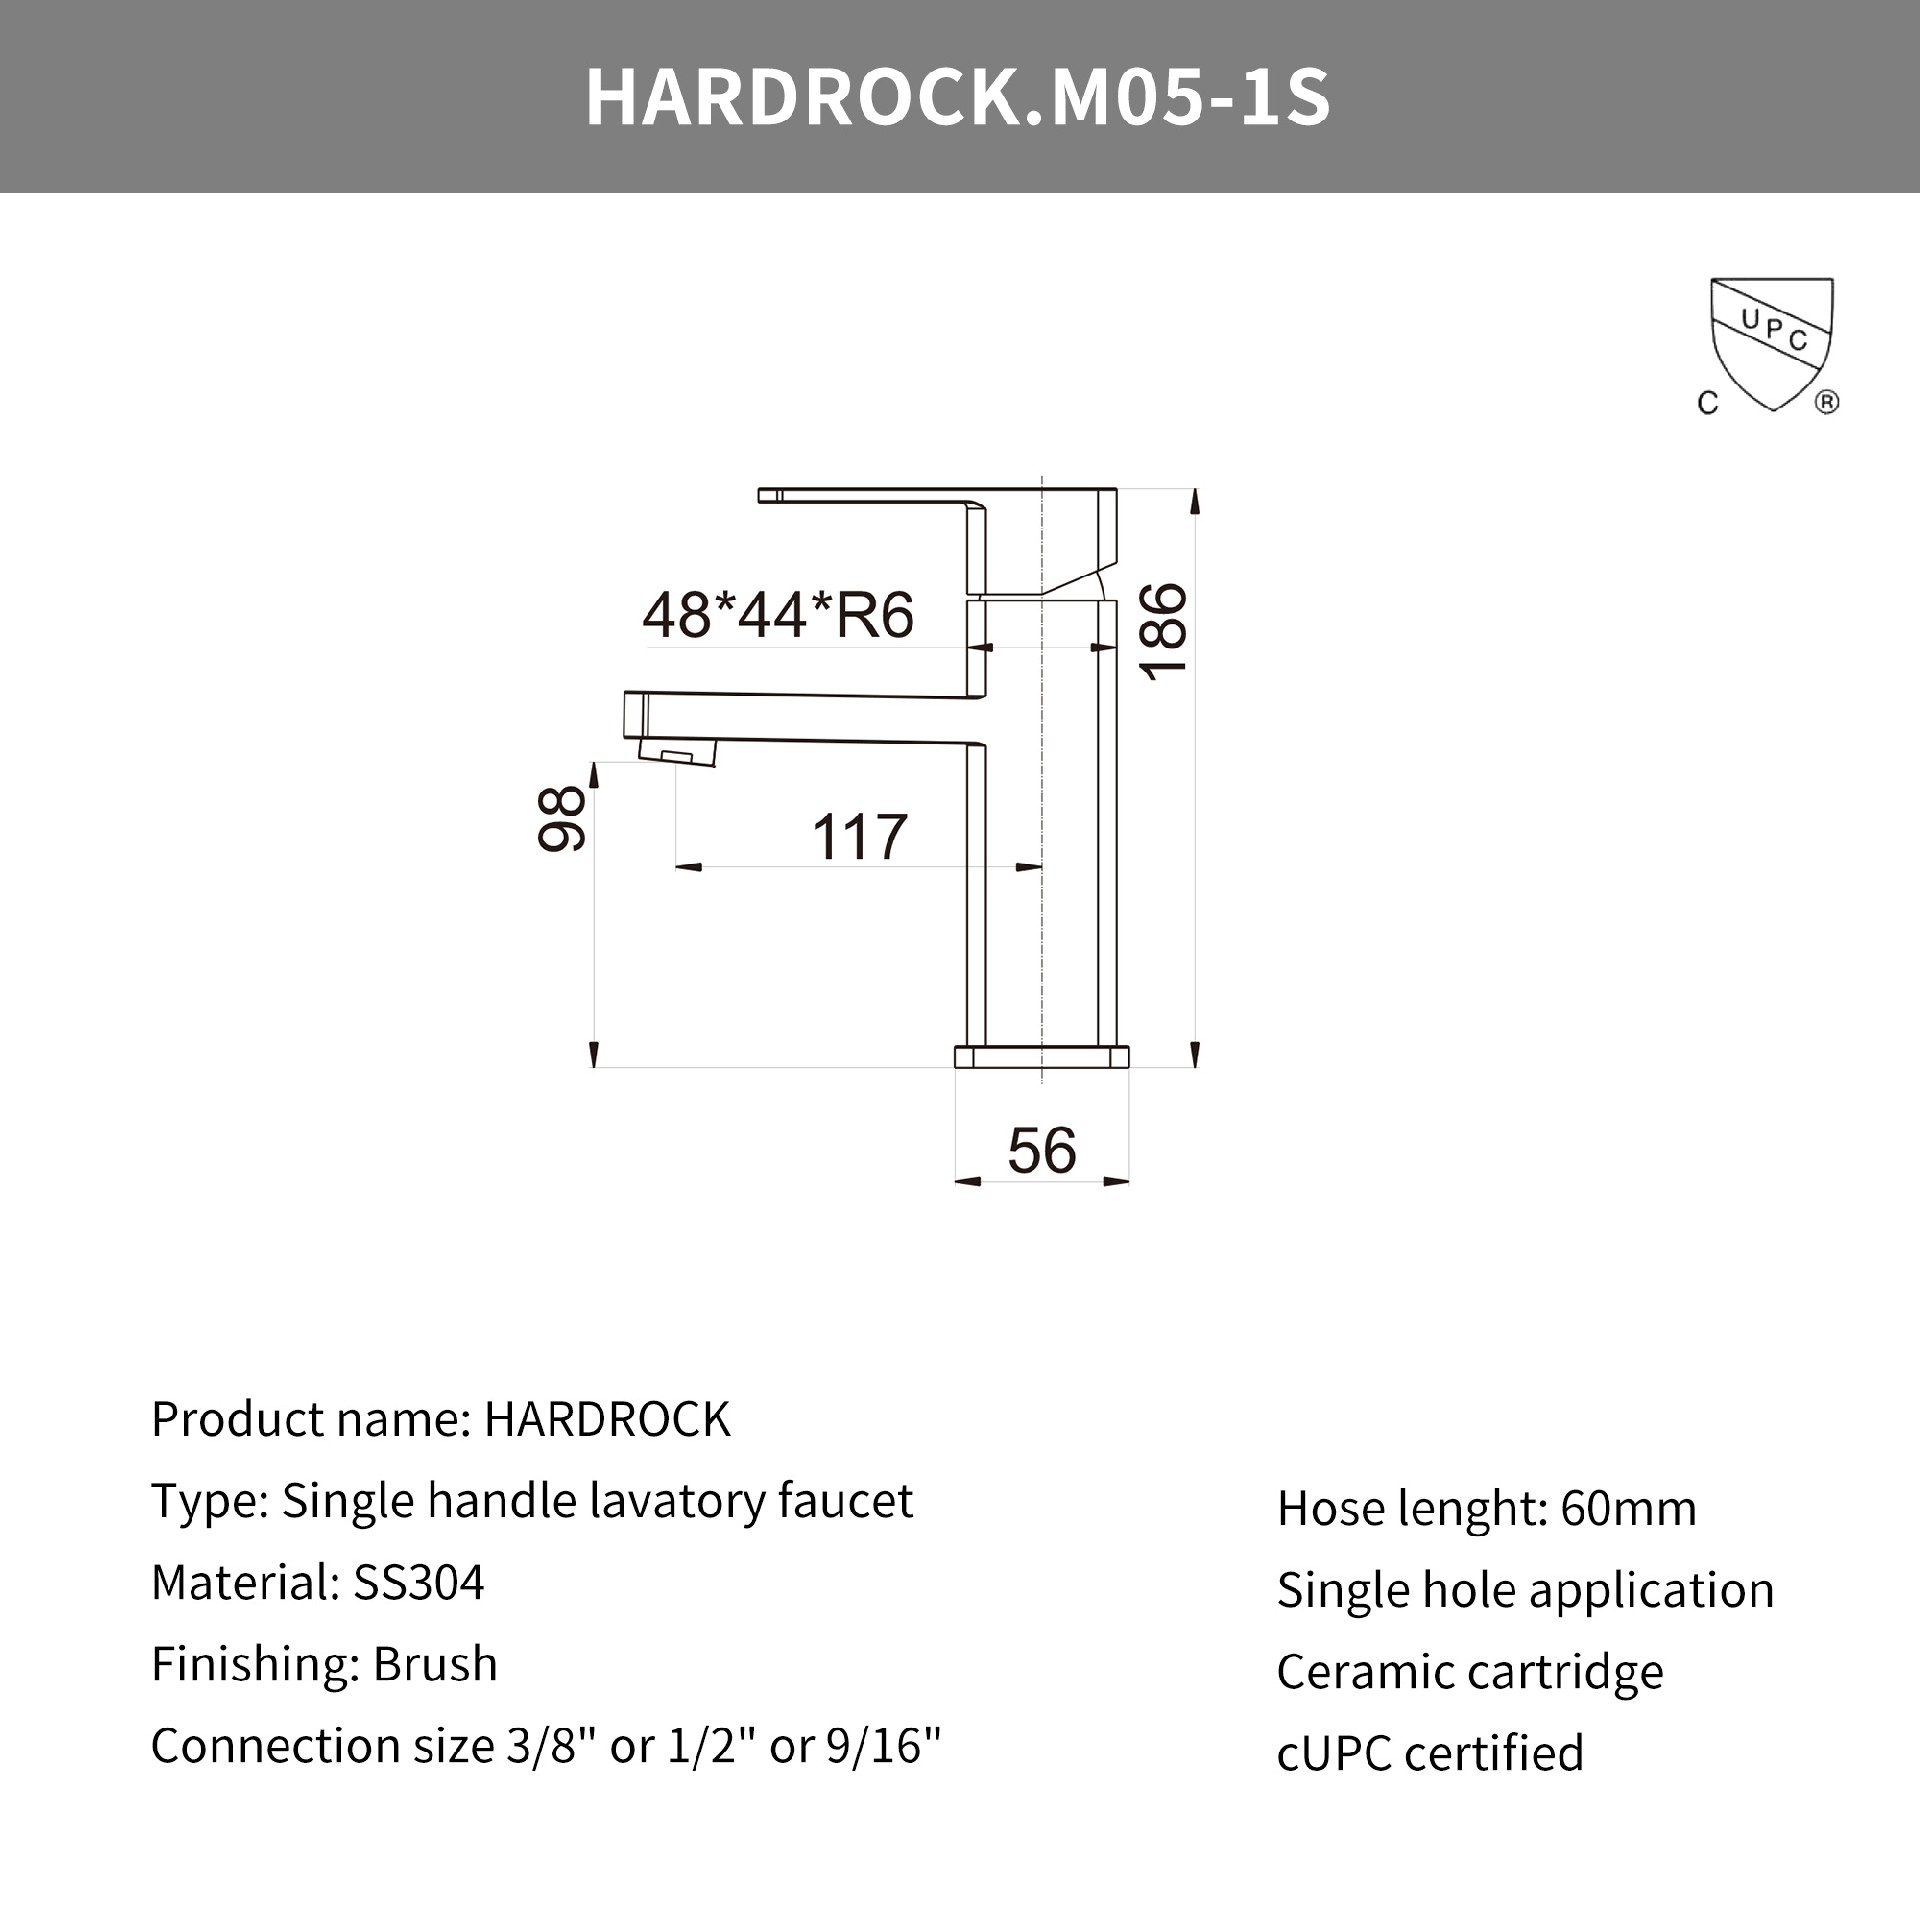 Hardrock.M05-1S